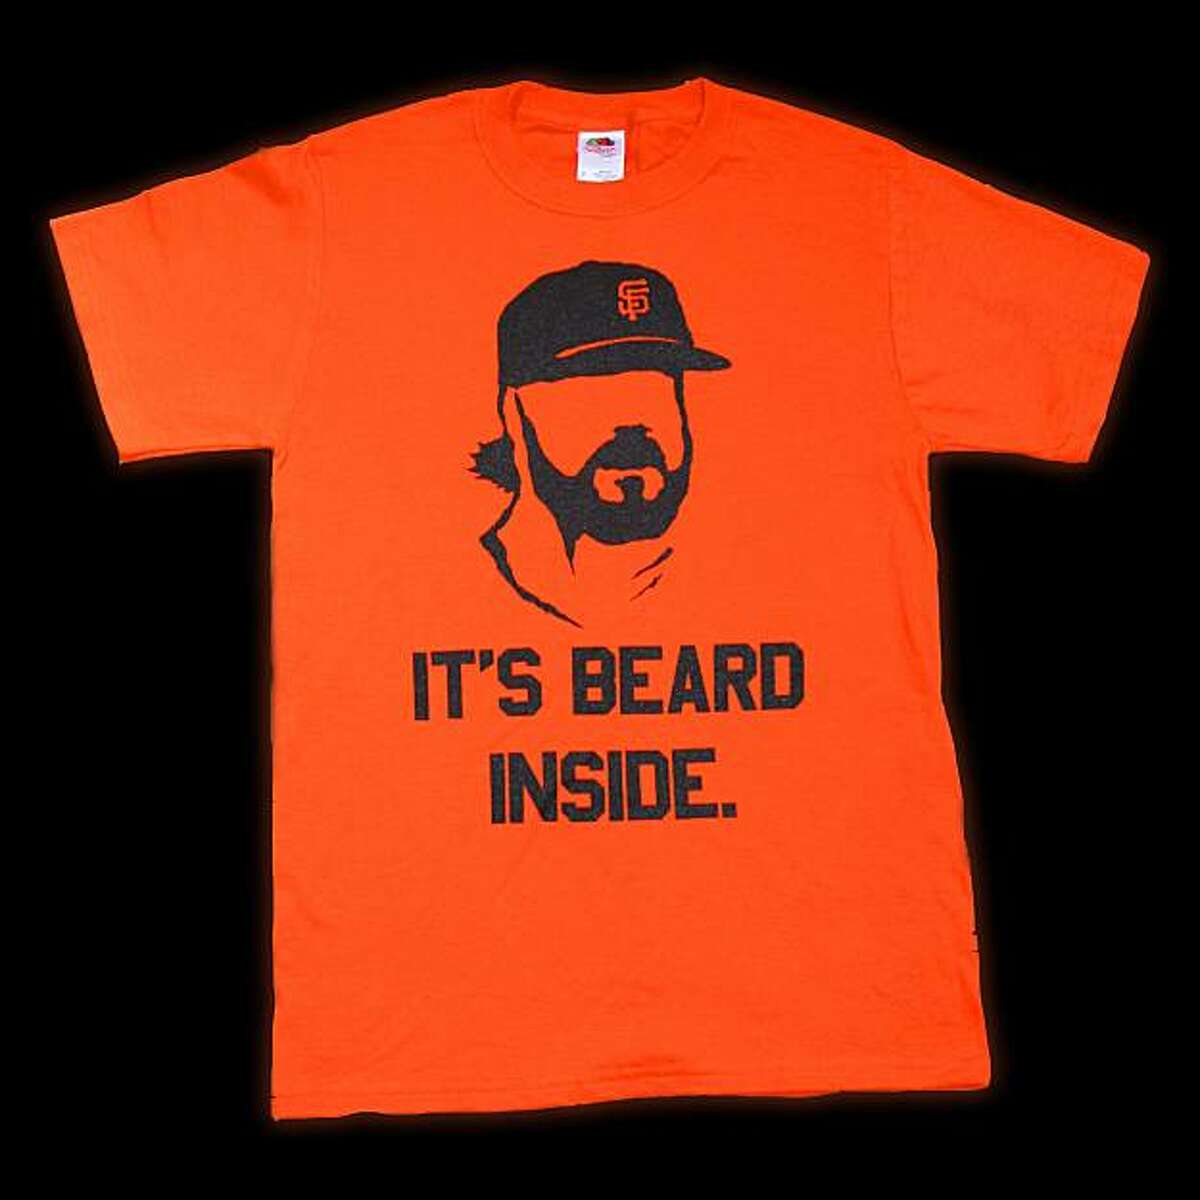 Giants fan Geoff Garnett of Pleasanton plans to sell the "It's Beard Inside" T-shirt he designed.